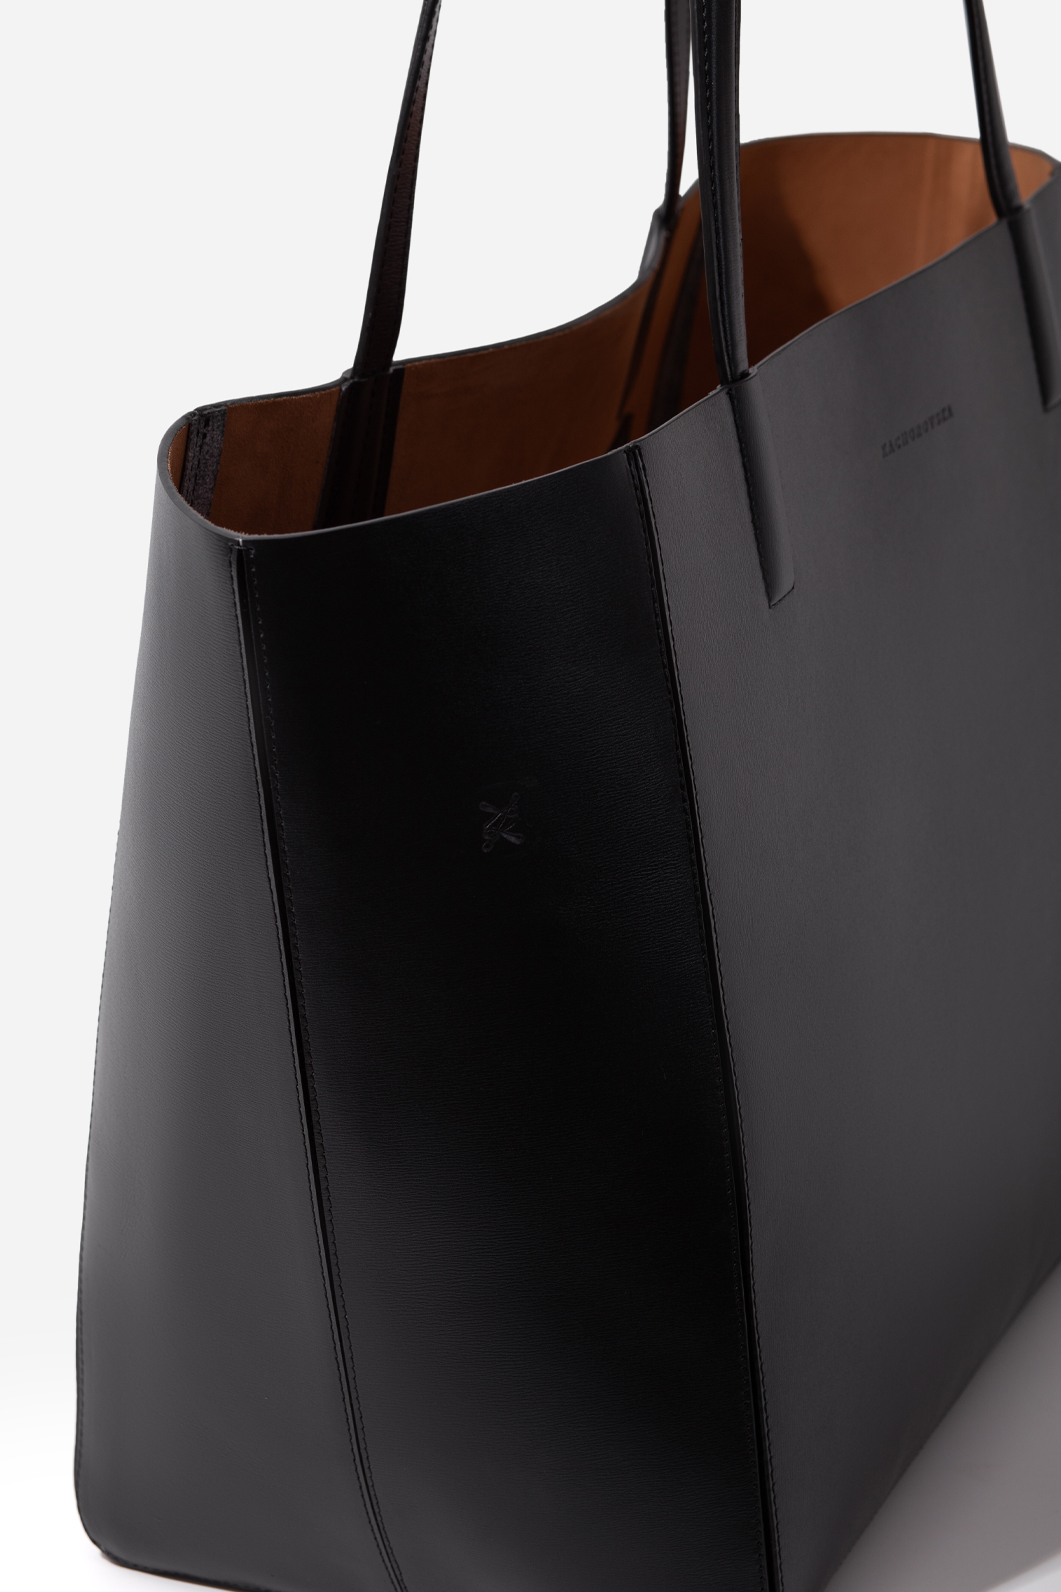 Sarah black leather shopper bag /gold/